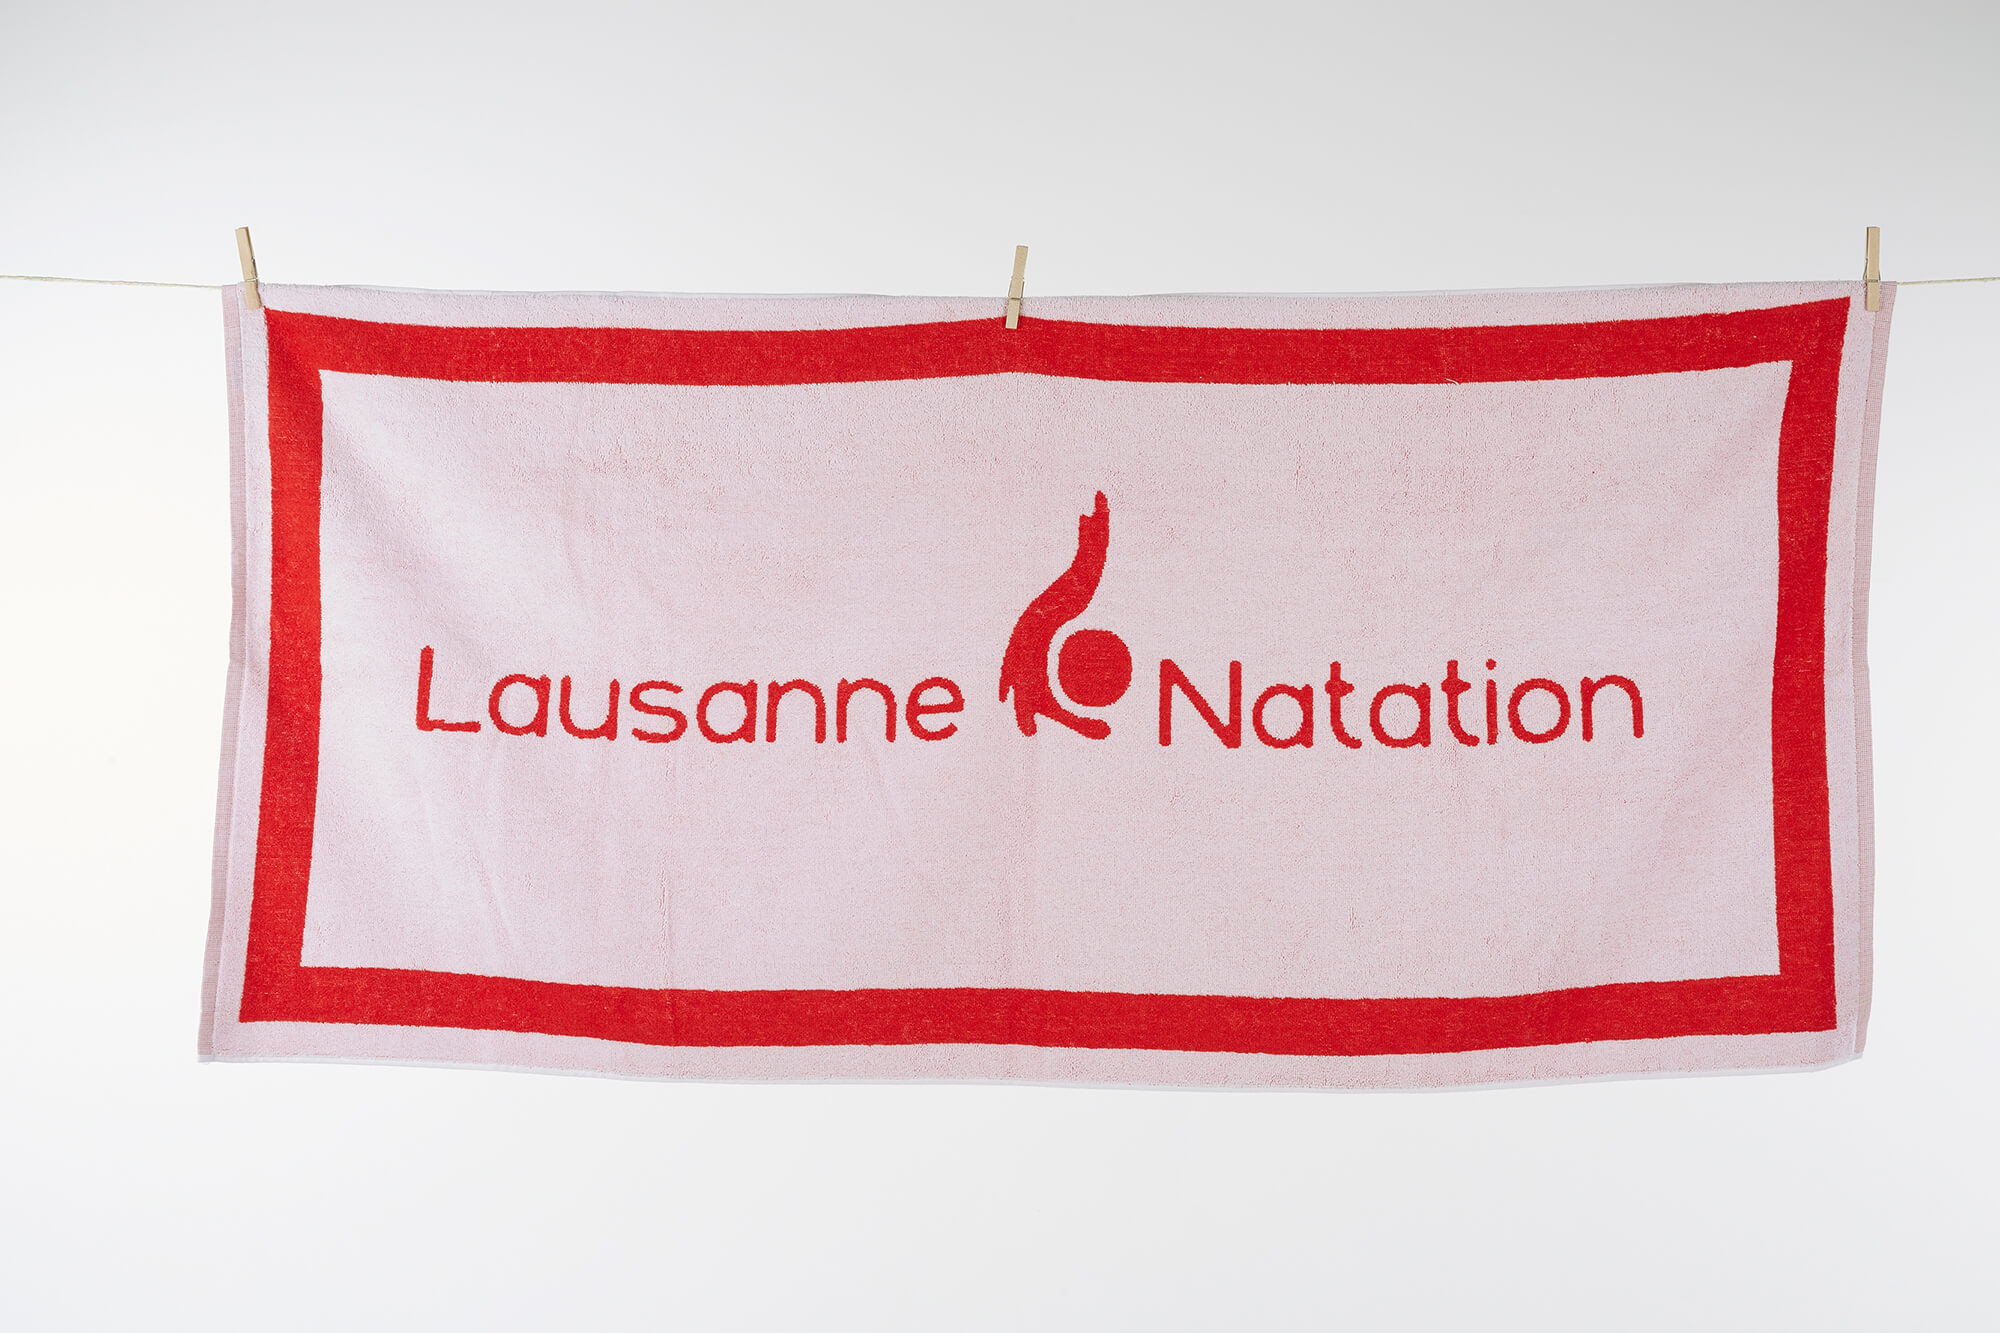 Lausanne Natation (2015)